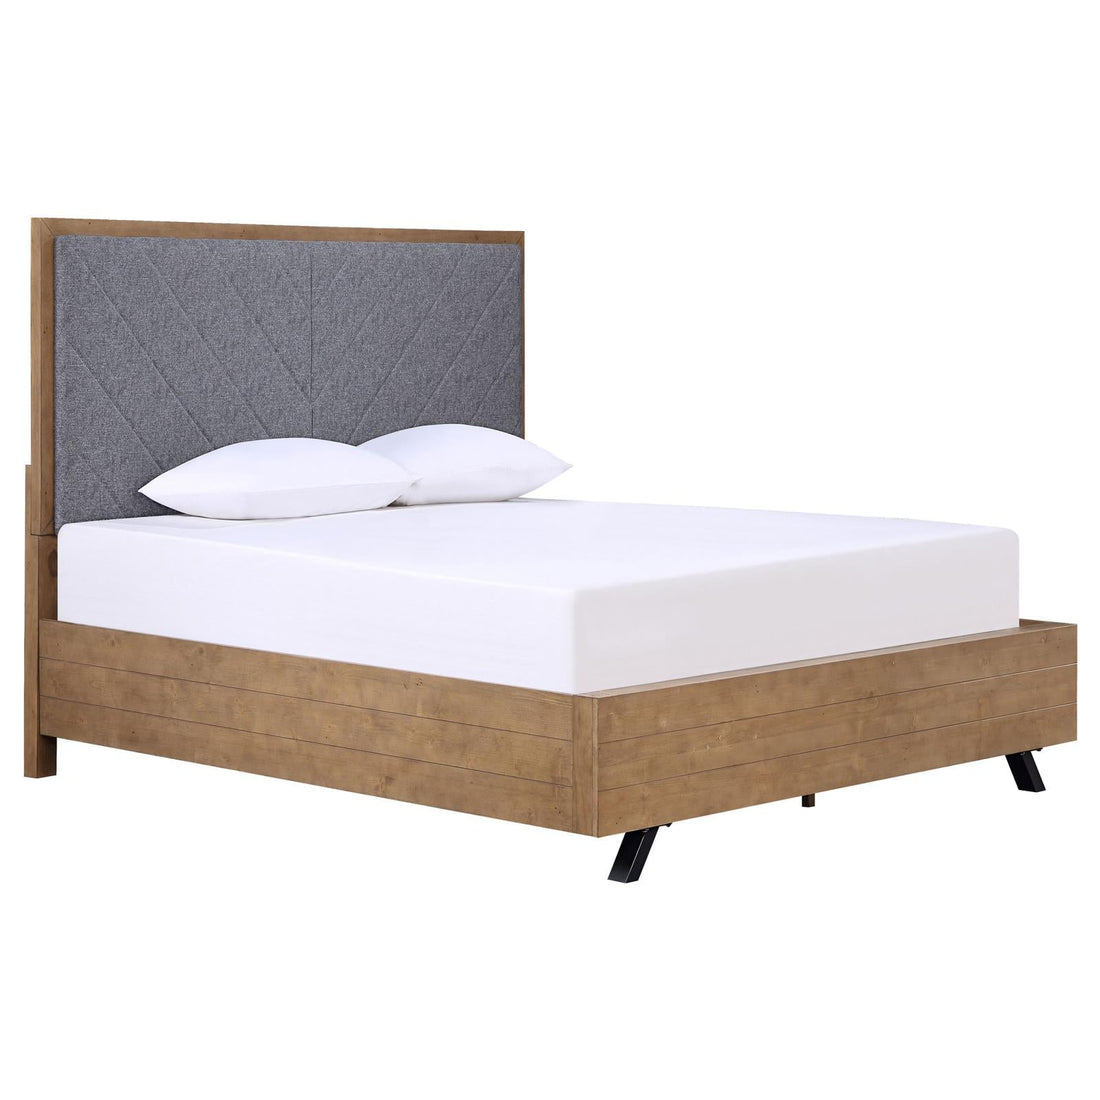 Taylor Light Honey Brown/Gray Upholstered Panel Bedroom Set - SET | 223421Q | 223422 | 223425 - Bien Home Furniture &amp; Electronics